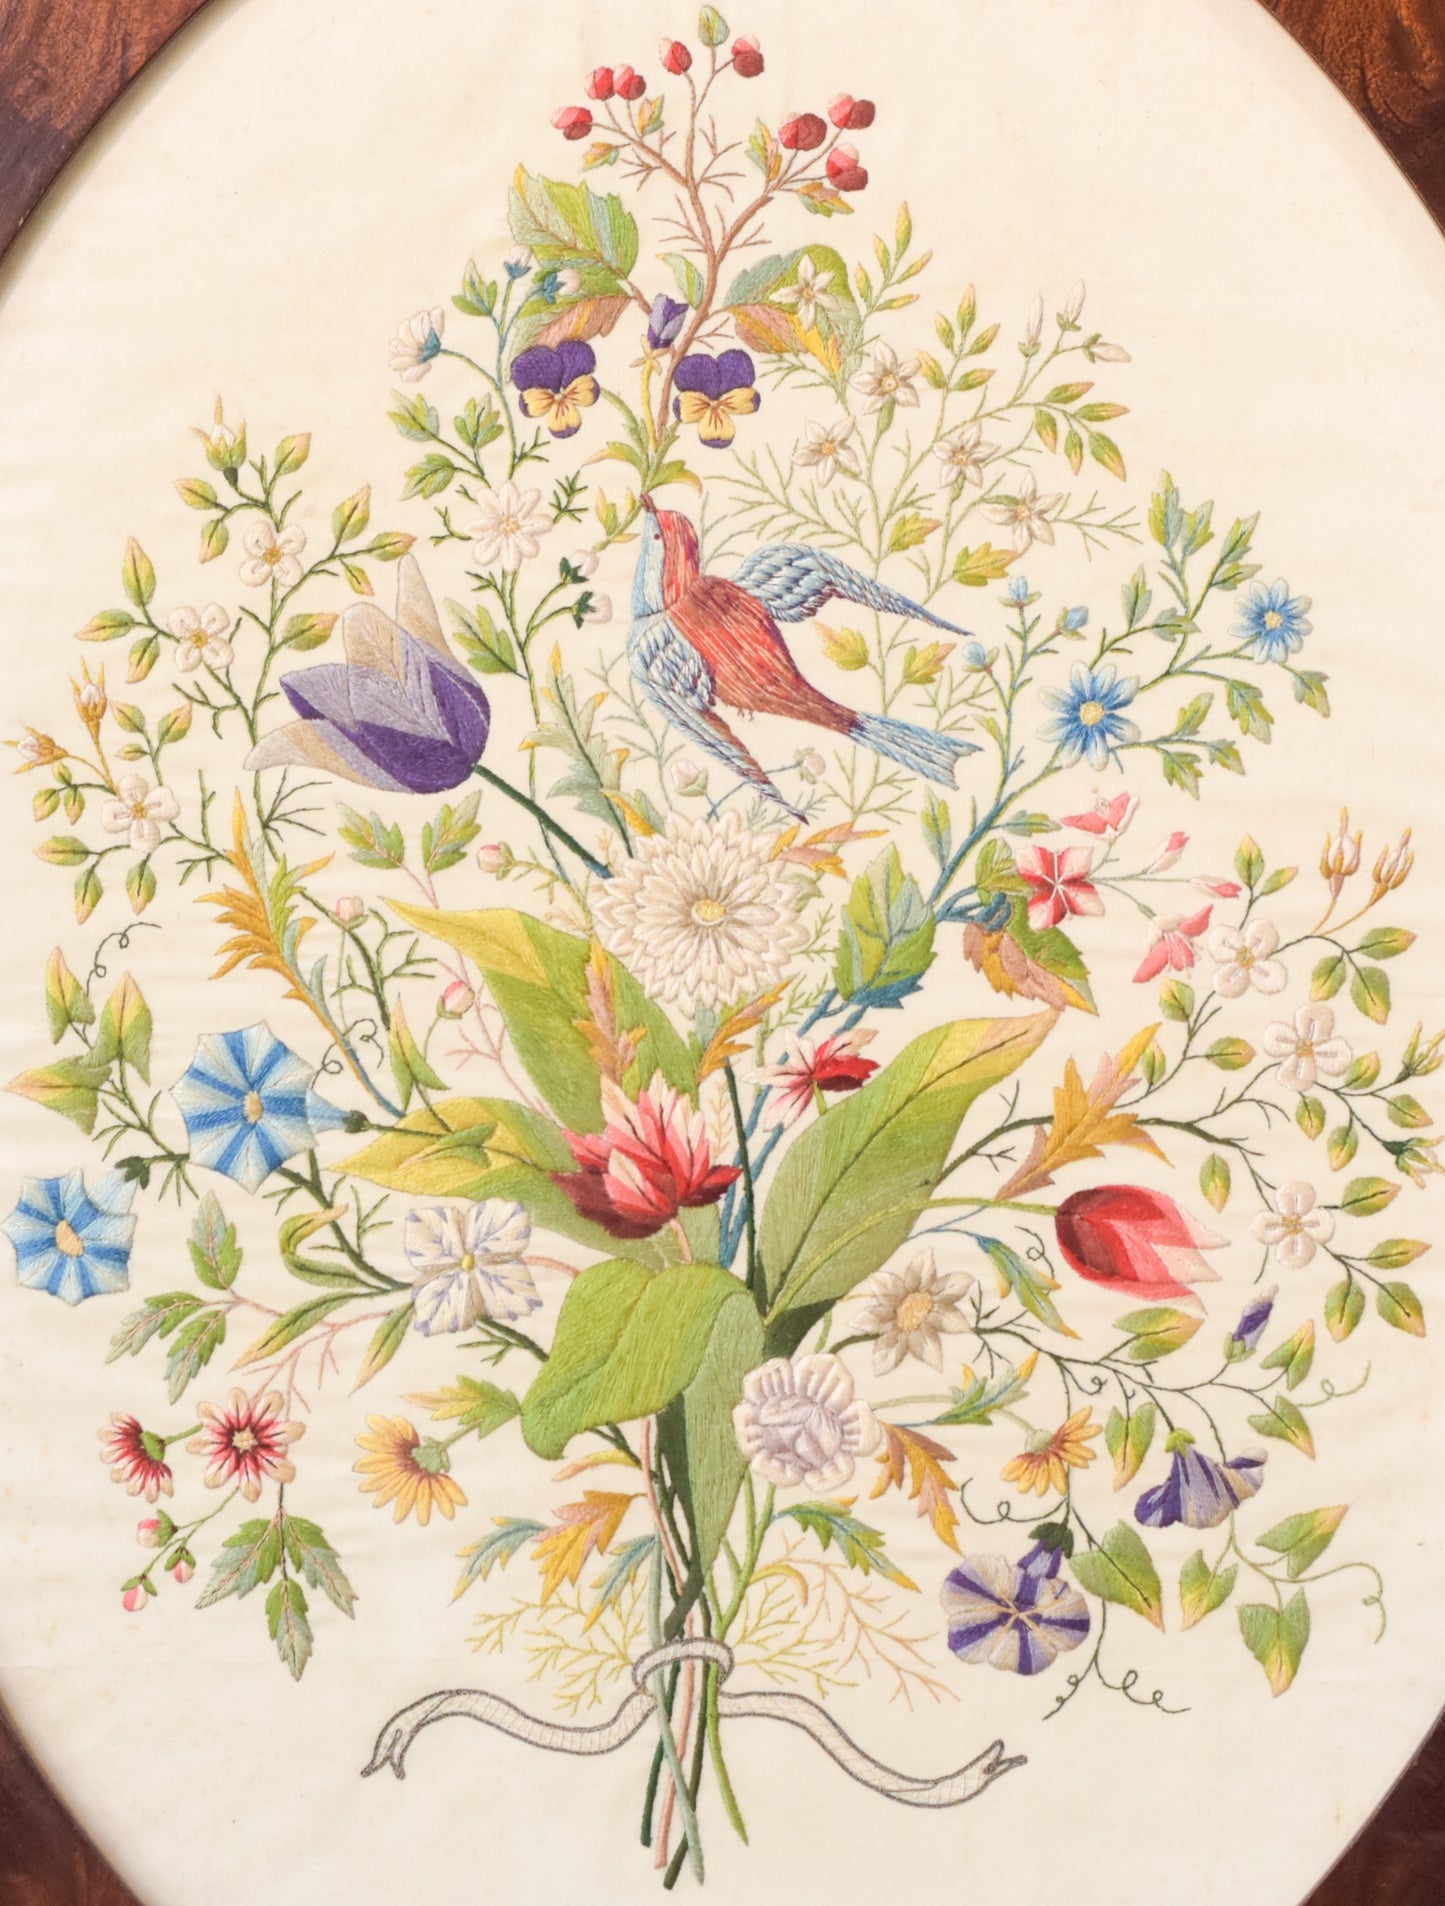 Bordado enmarcado con flores y pájaros